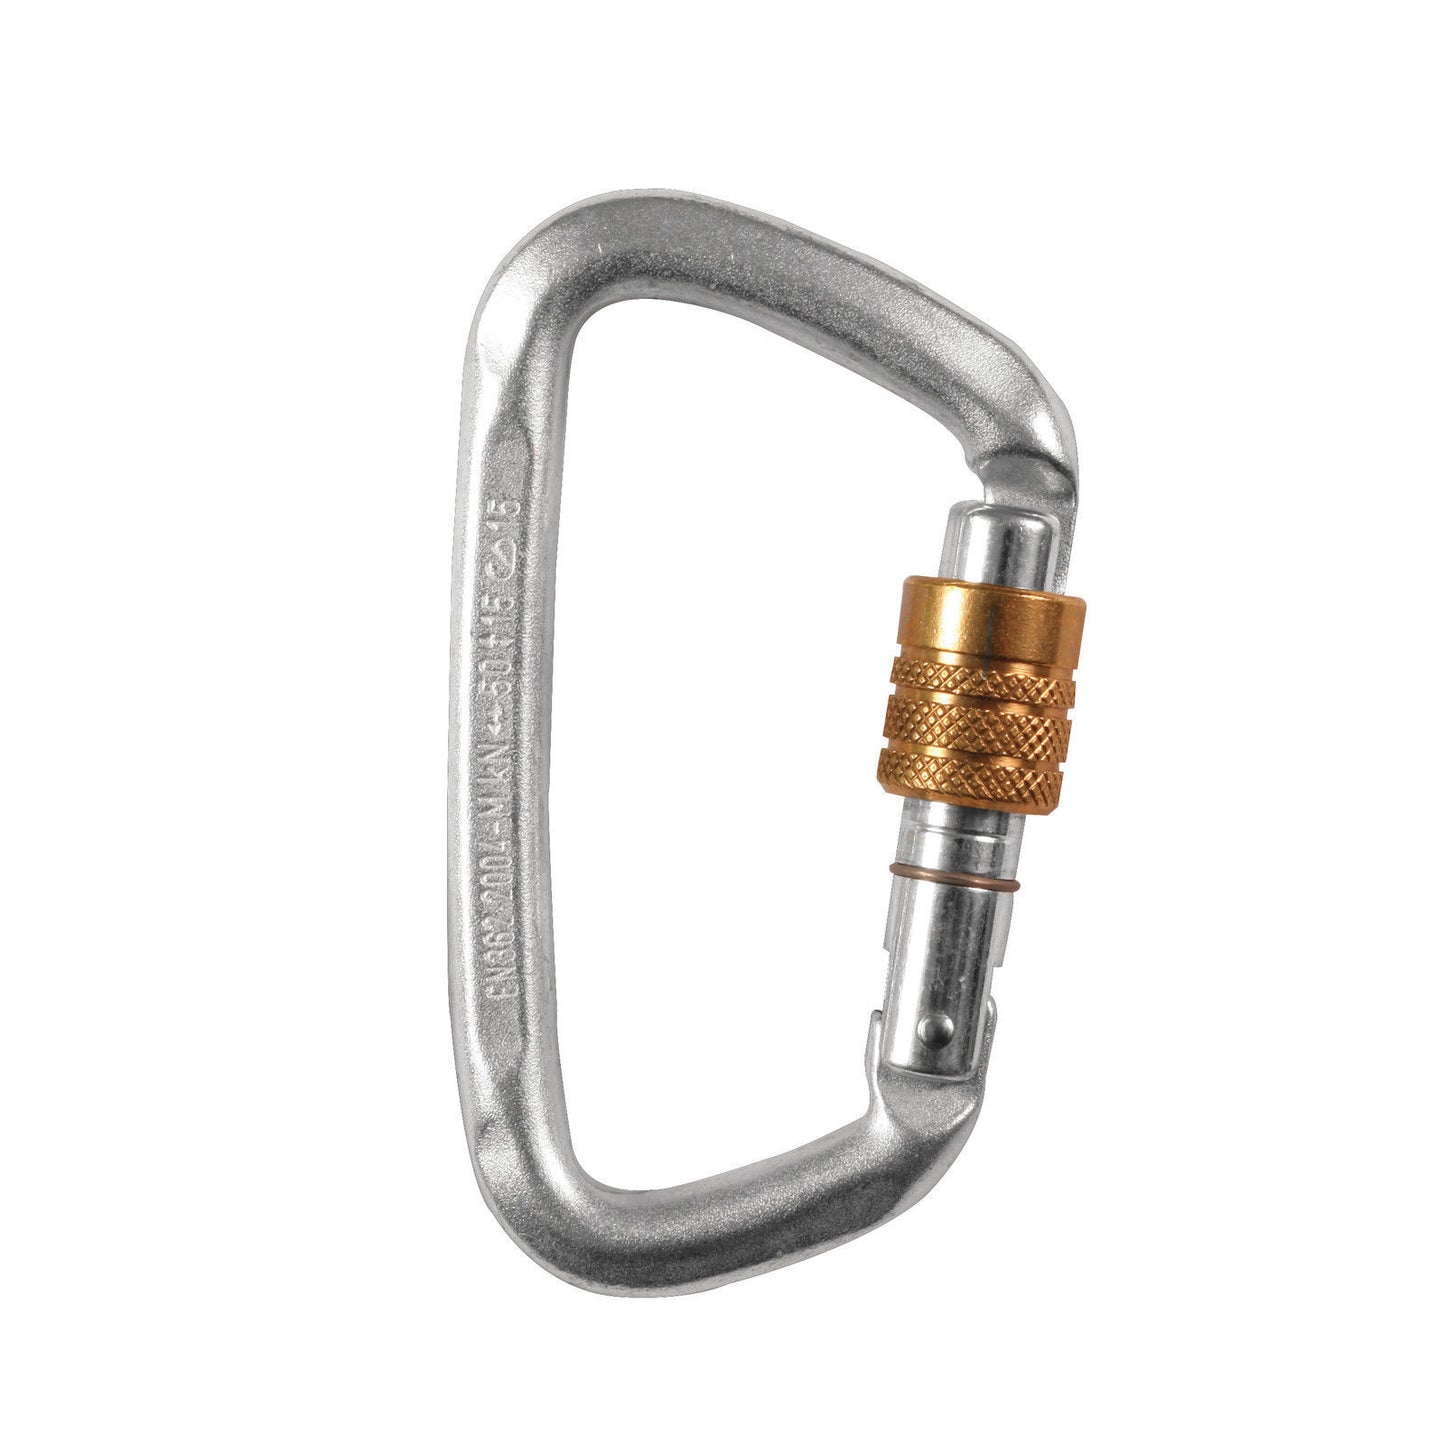 Silver Carabiner - Hard Steel Modified D Key Screw Gate Lock - CE Certified